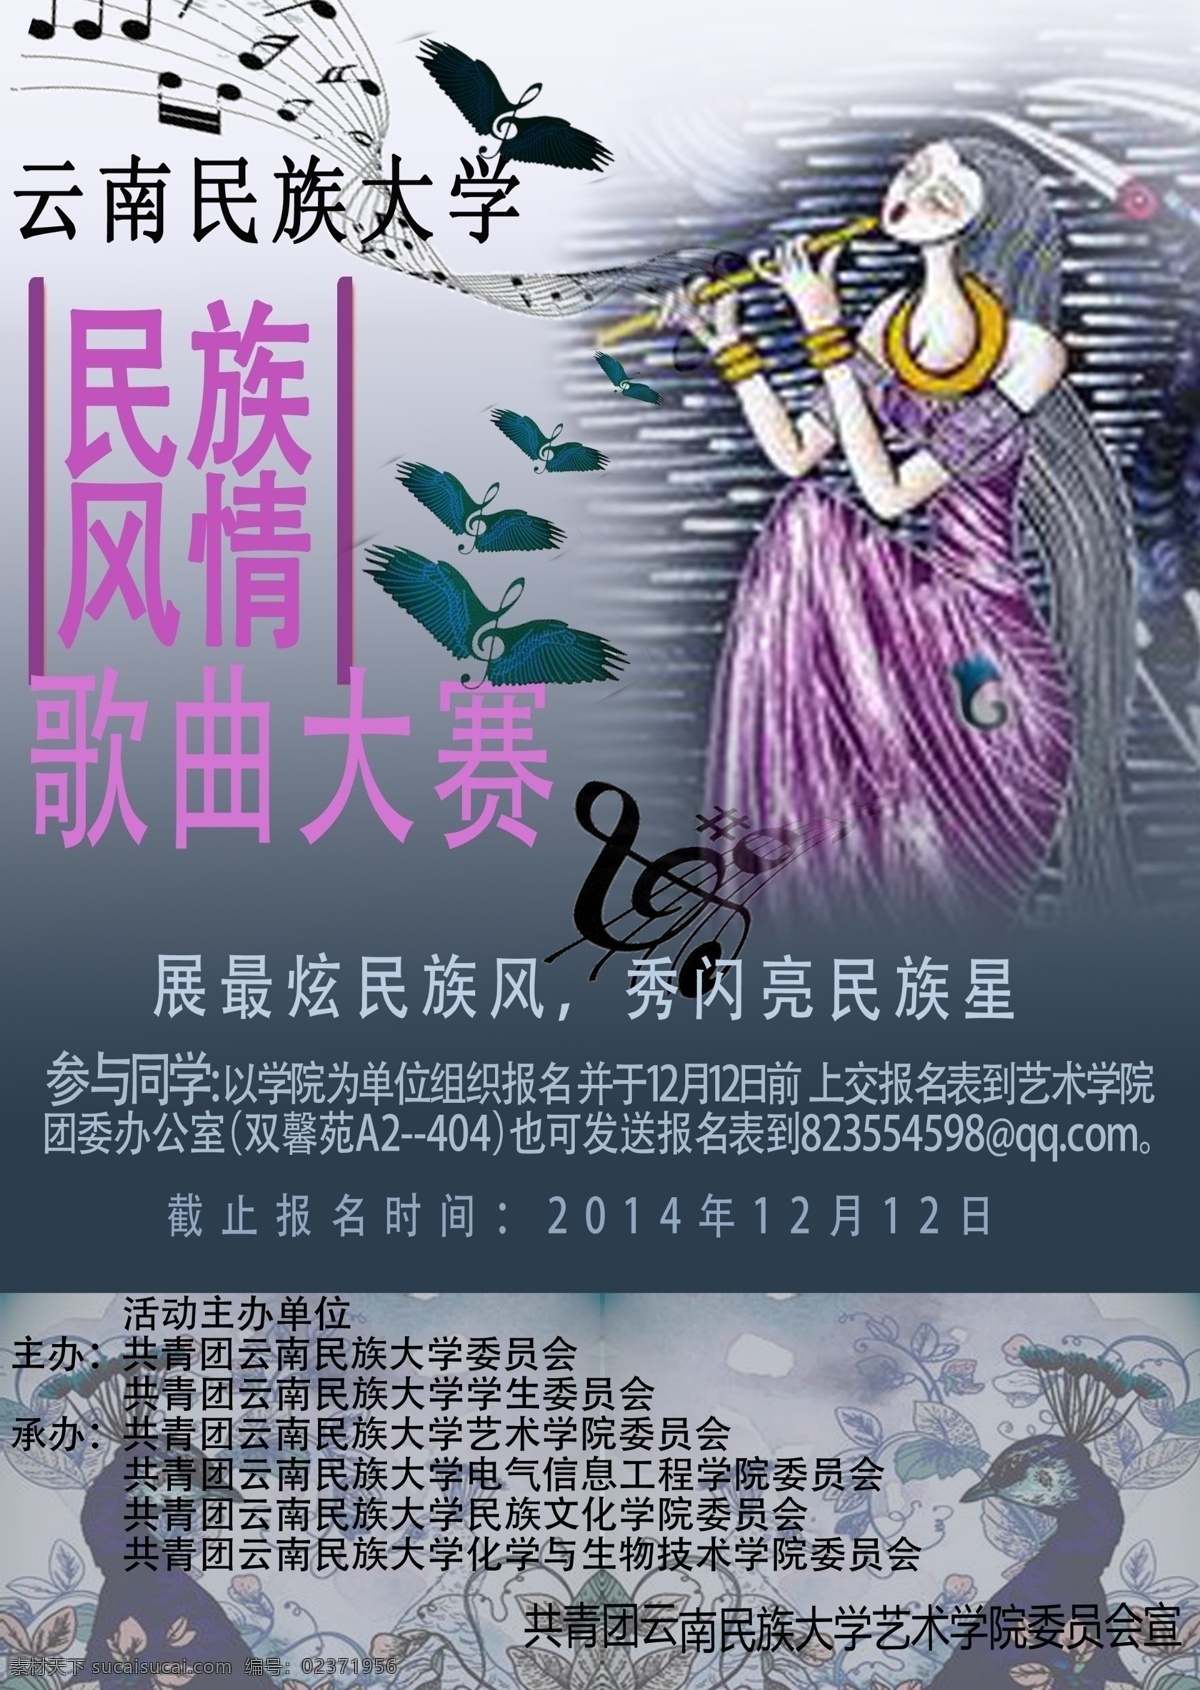 吹 笛子 少女 音乐 海报 音乐海报 为了 学校 活动 作 主要 用到 云南 少数民族 风情 版画